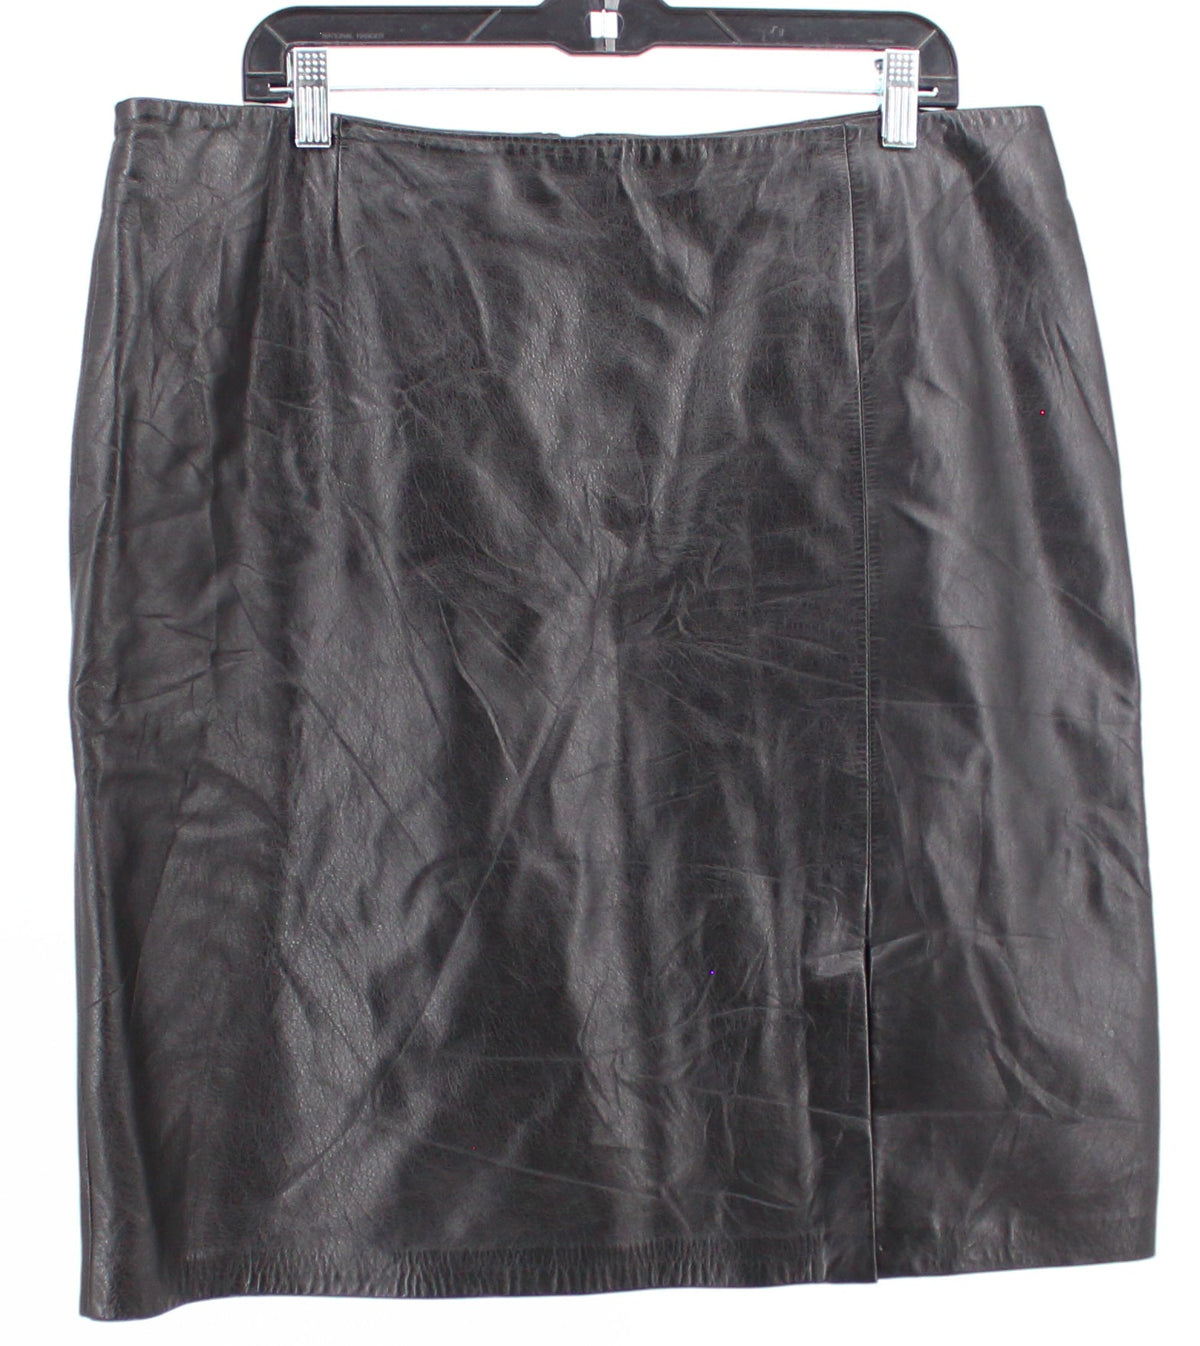 Danier Black Basic Leather Skirt